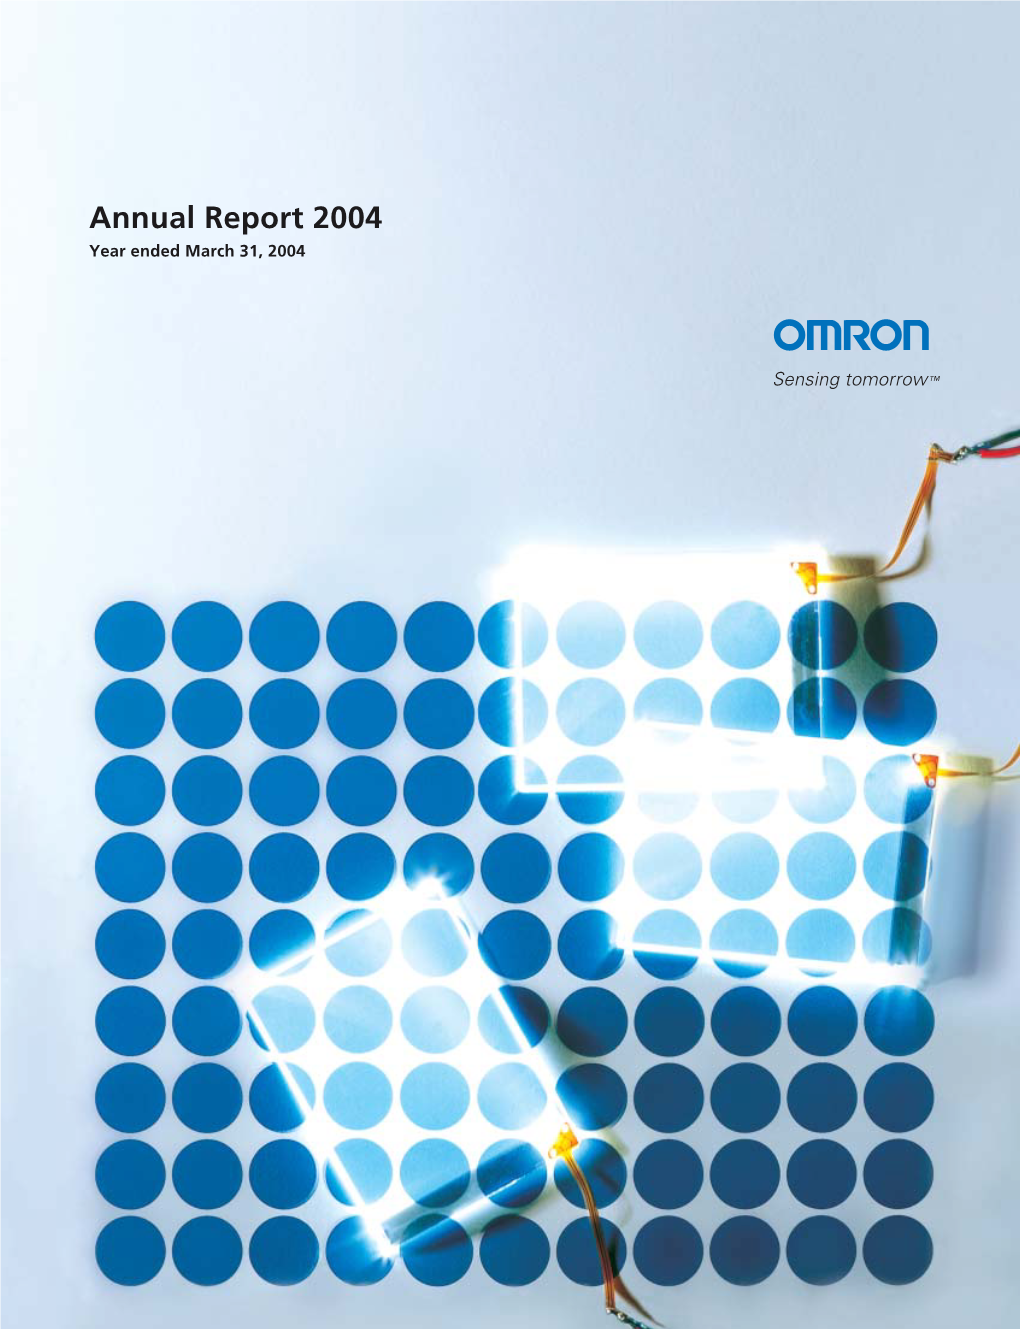 Annual Report 2004 Printed in Japan